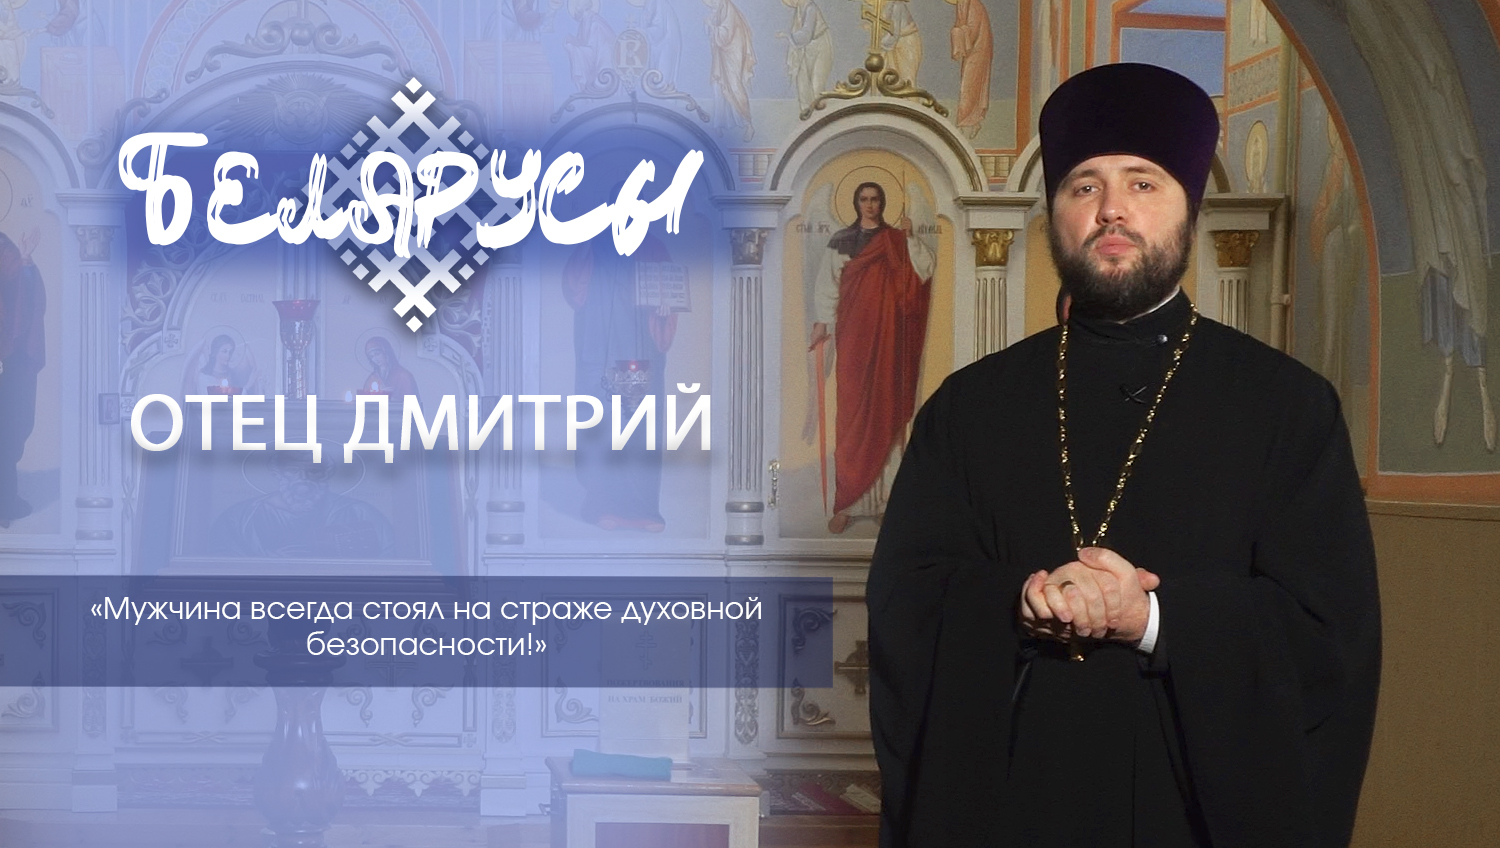 Многодетный отец и священнослужитель – Дмитрий Маркин